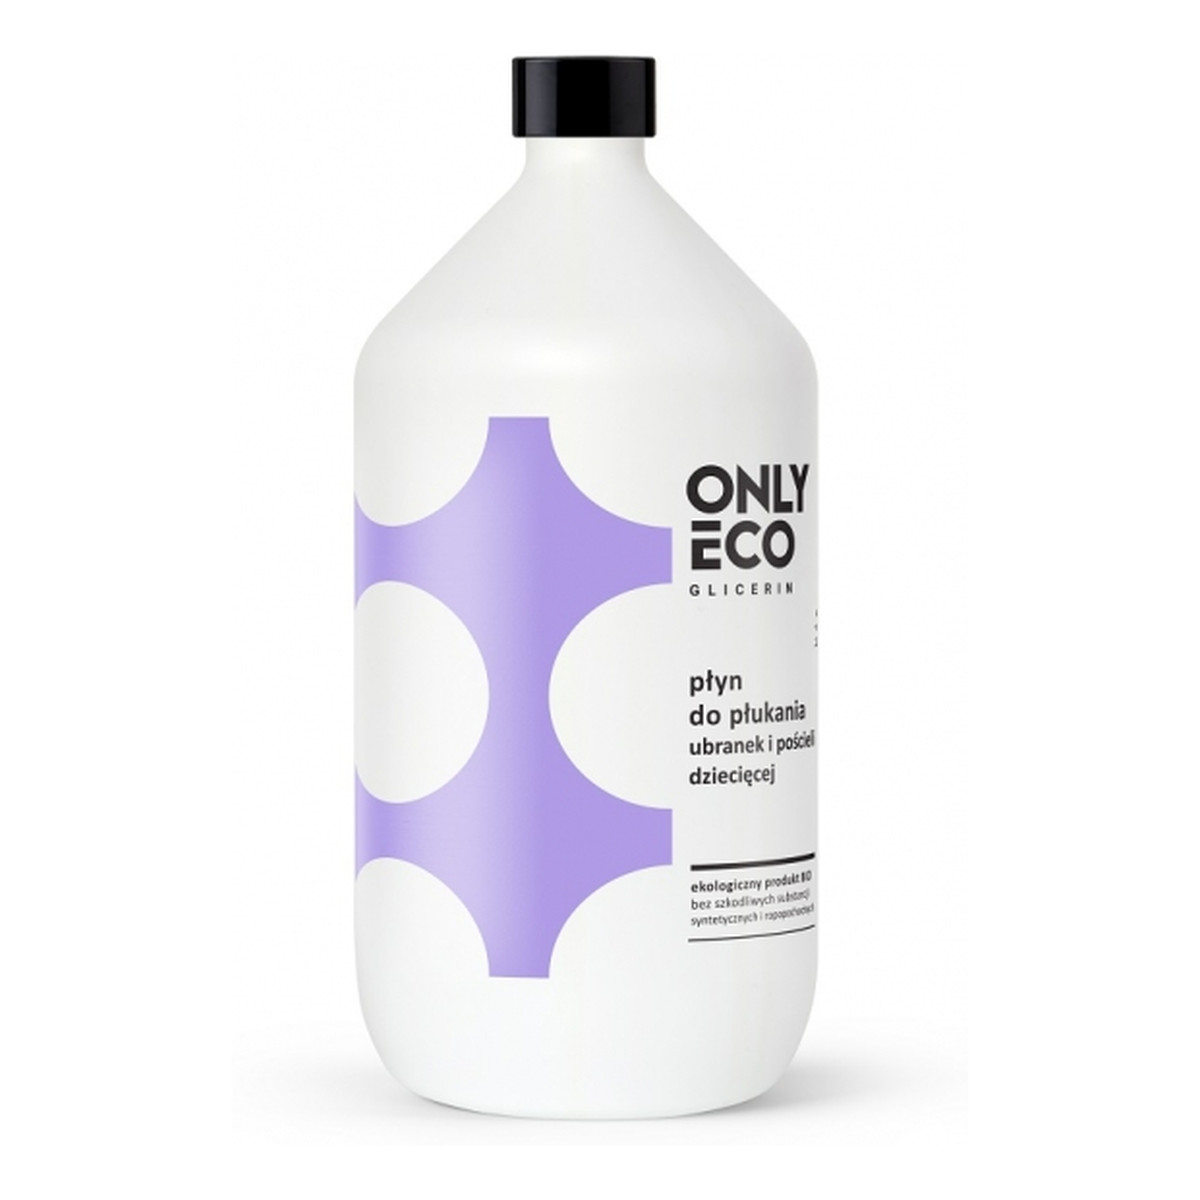 OnlyEco Glicerin ekologiczny płyn do płukania ubranek i pościeli dziecięcej 1000ml